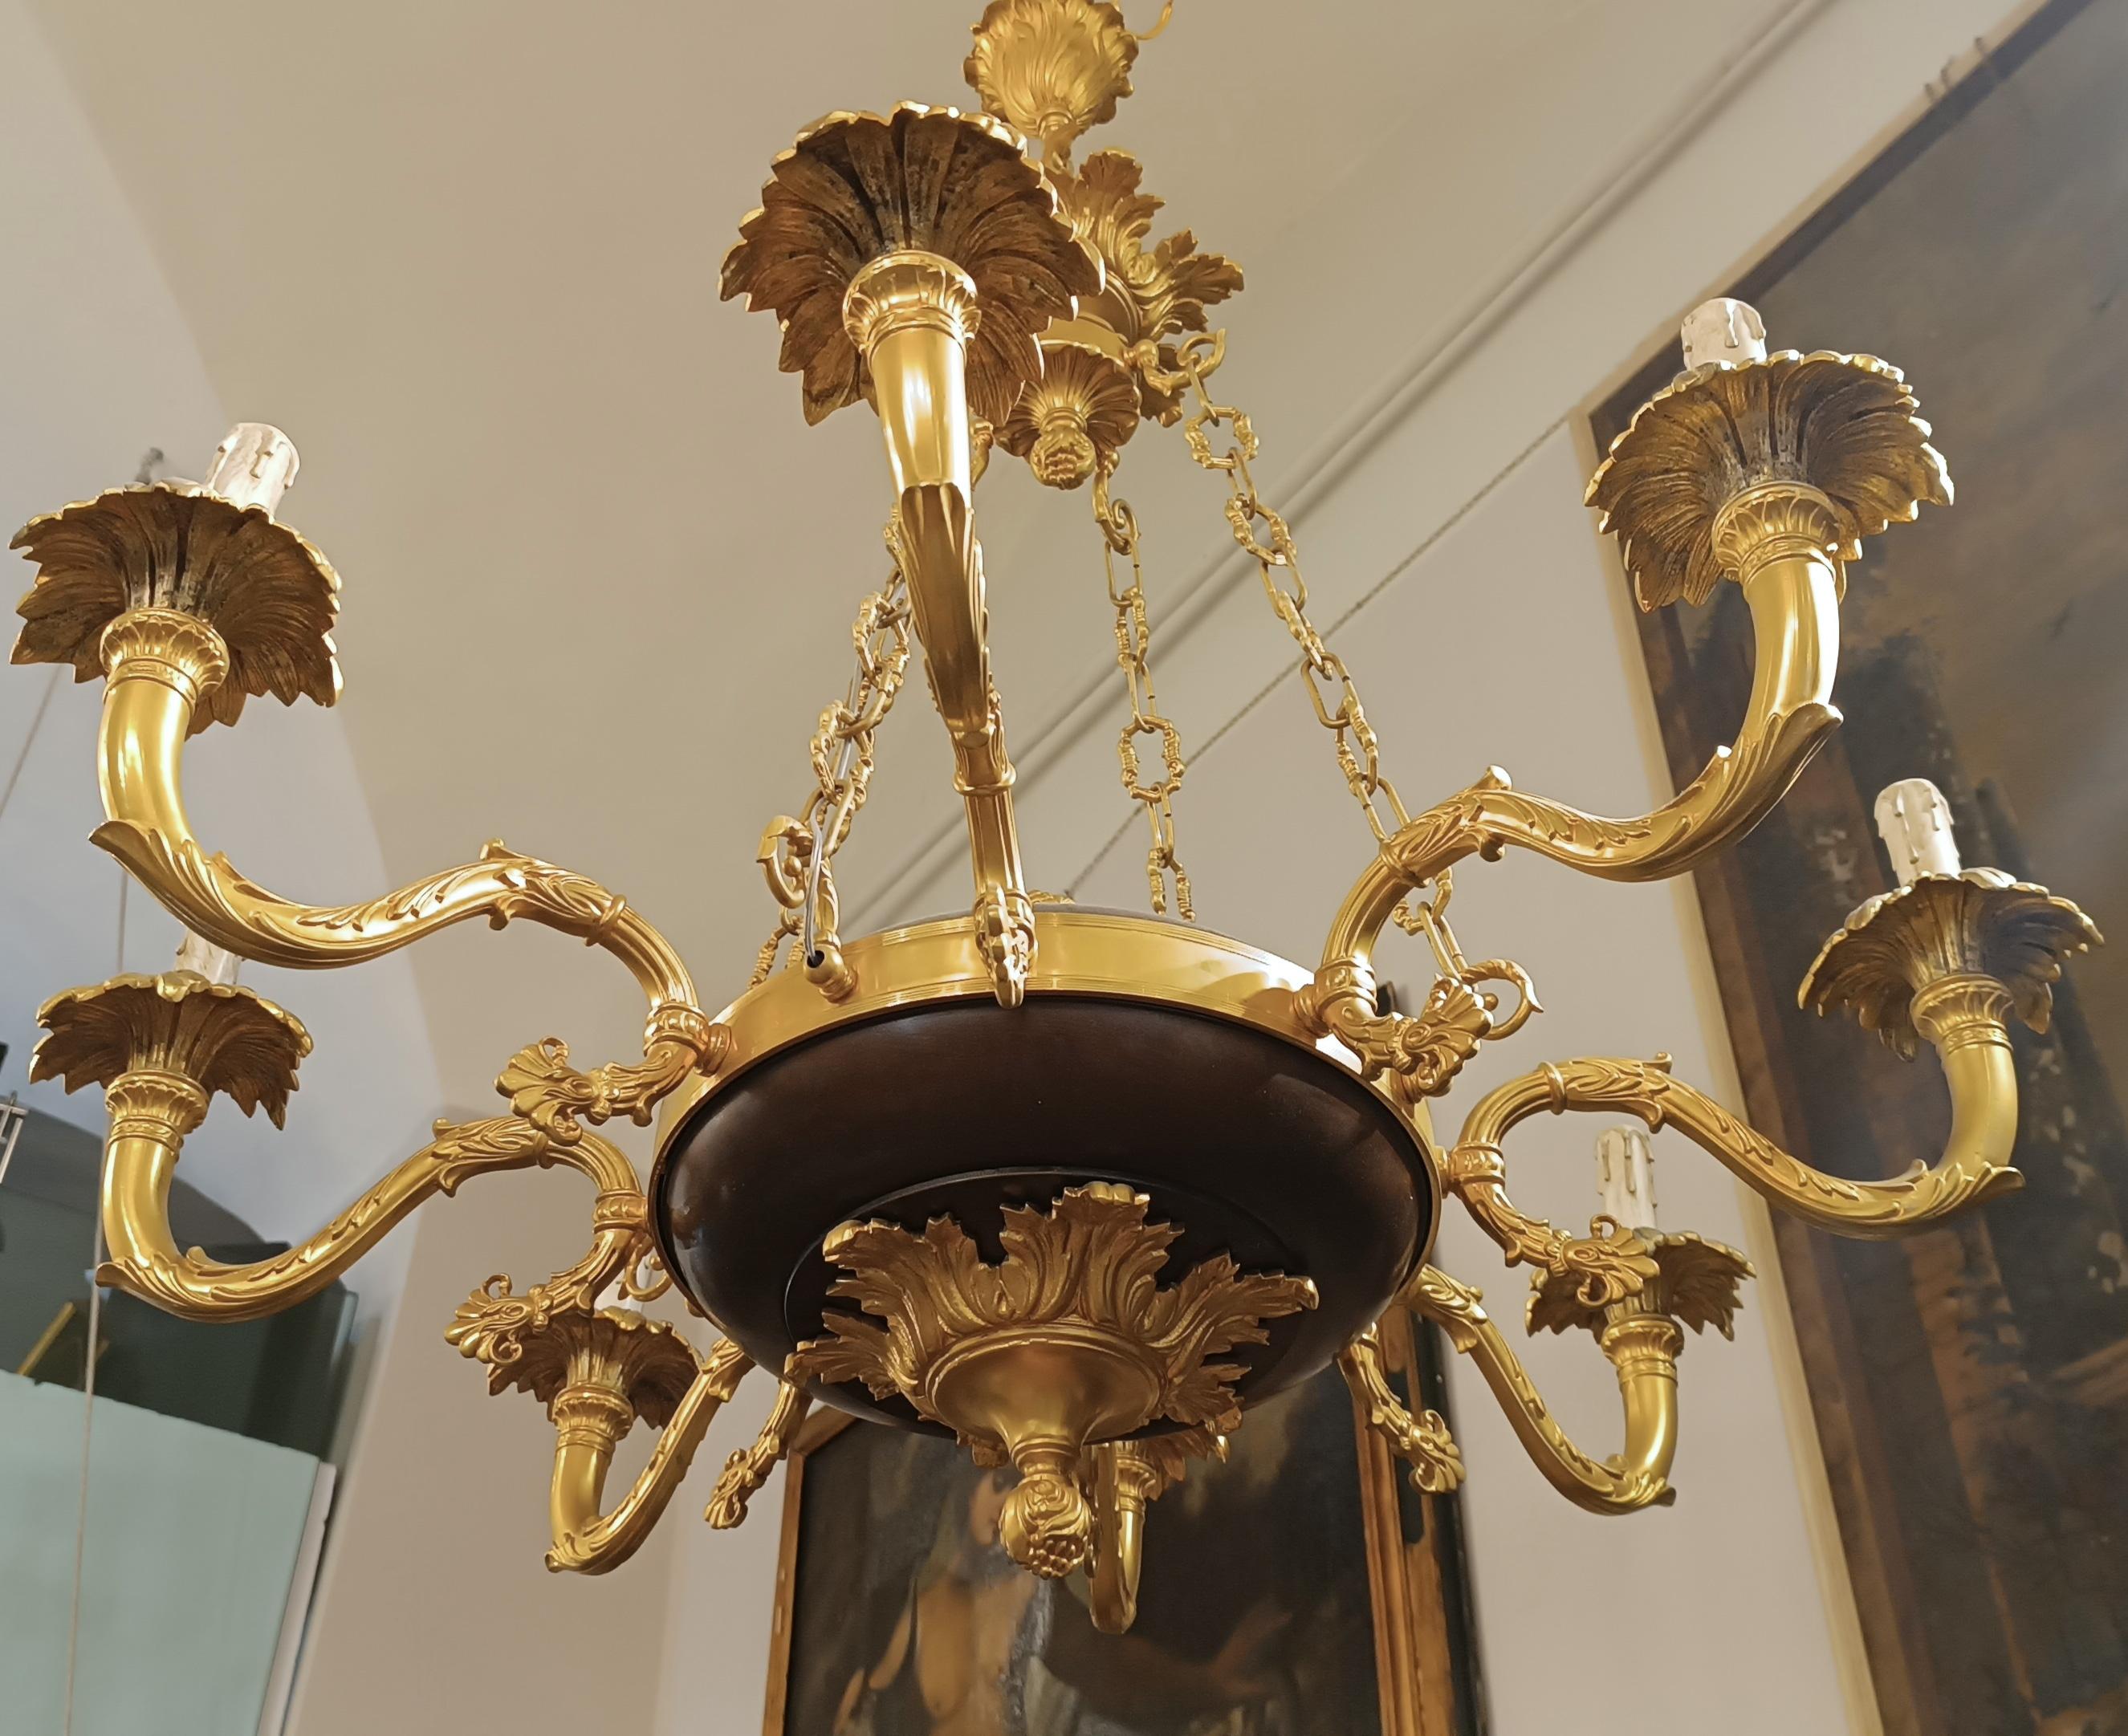 Der Kronleuchter aus Bronze im Wachsausschmelzverfahren ist ein elegantes und raffiniertes Werk, das eine typische Florentiner Manufaktur aus der zweiten Hälfte des 19. Jahrhunderts darstellt. Die goldene und ziselierte Oberfläche weist auch Teile